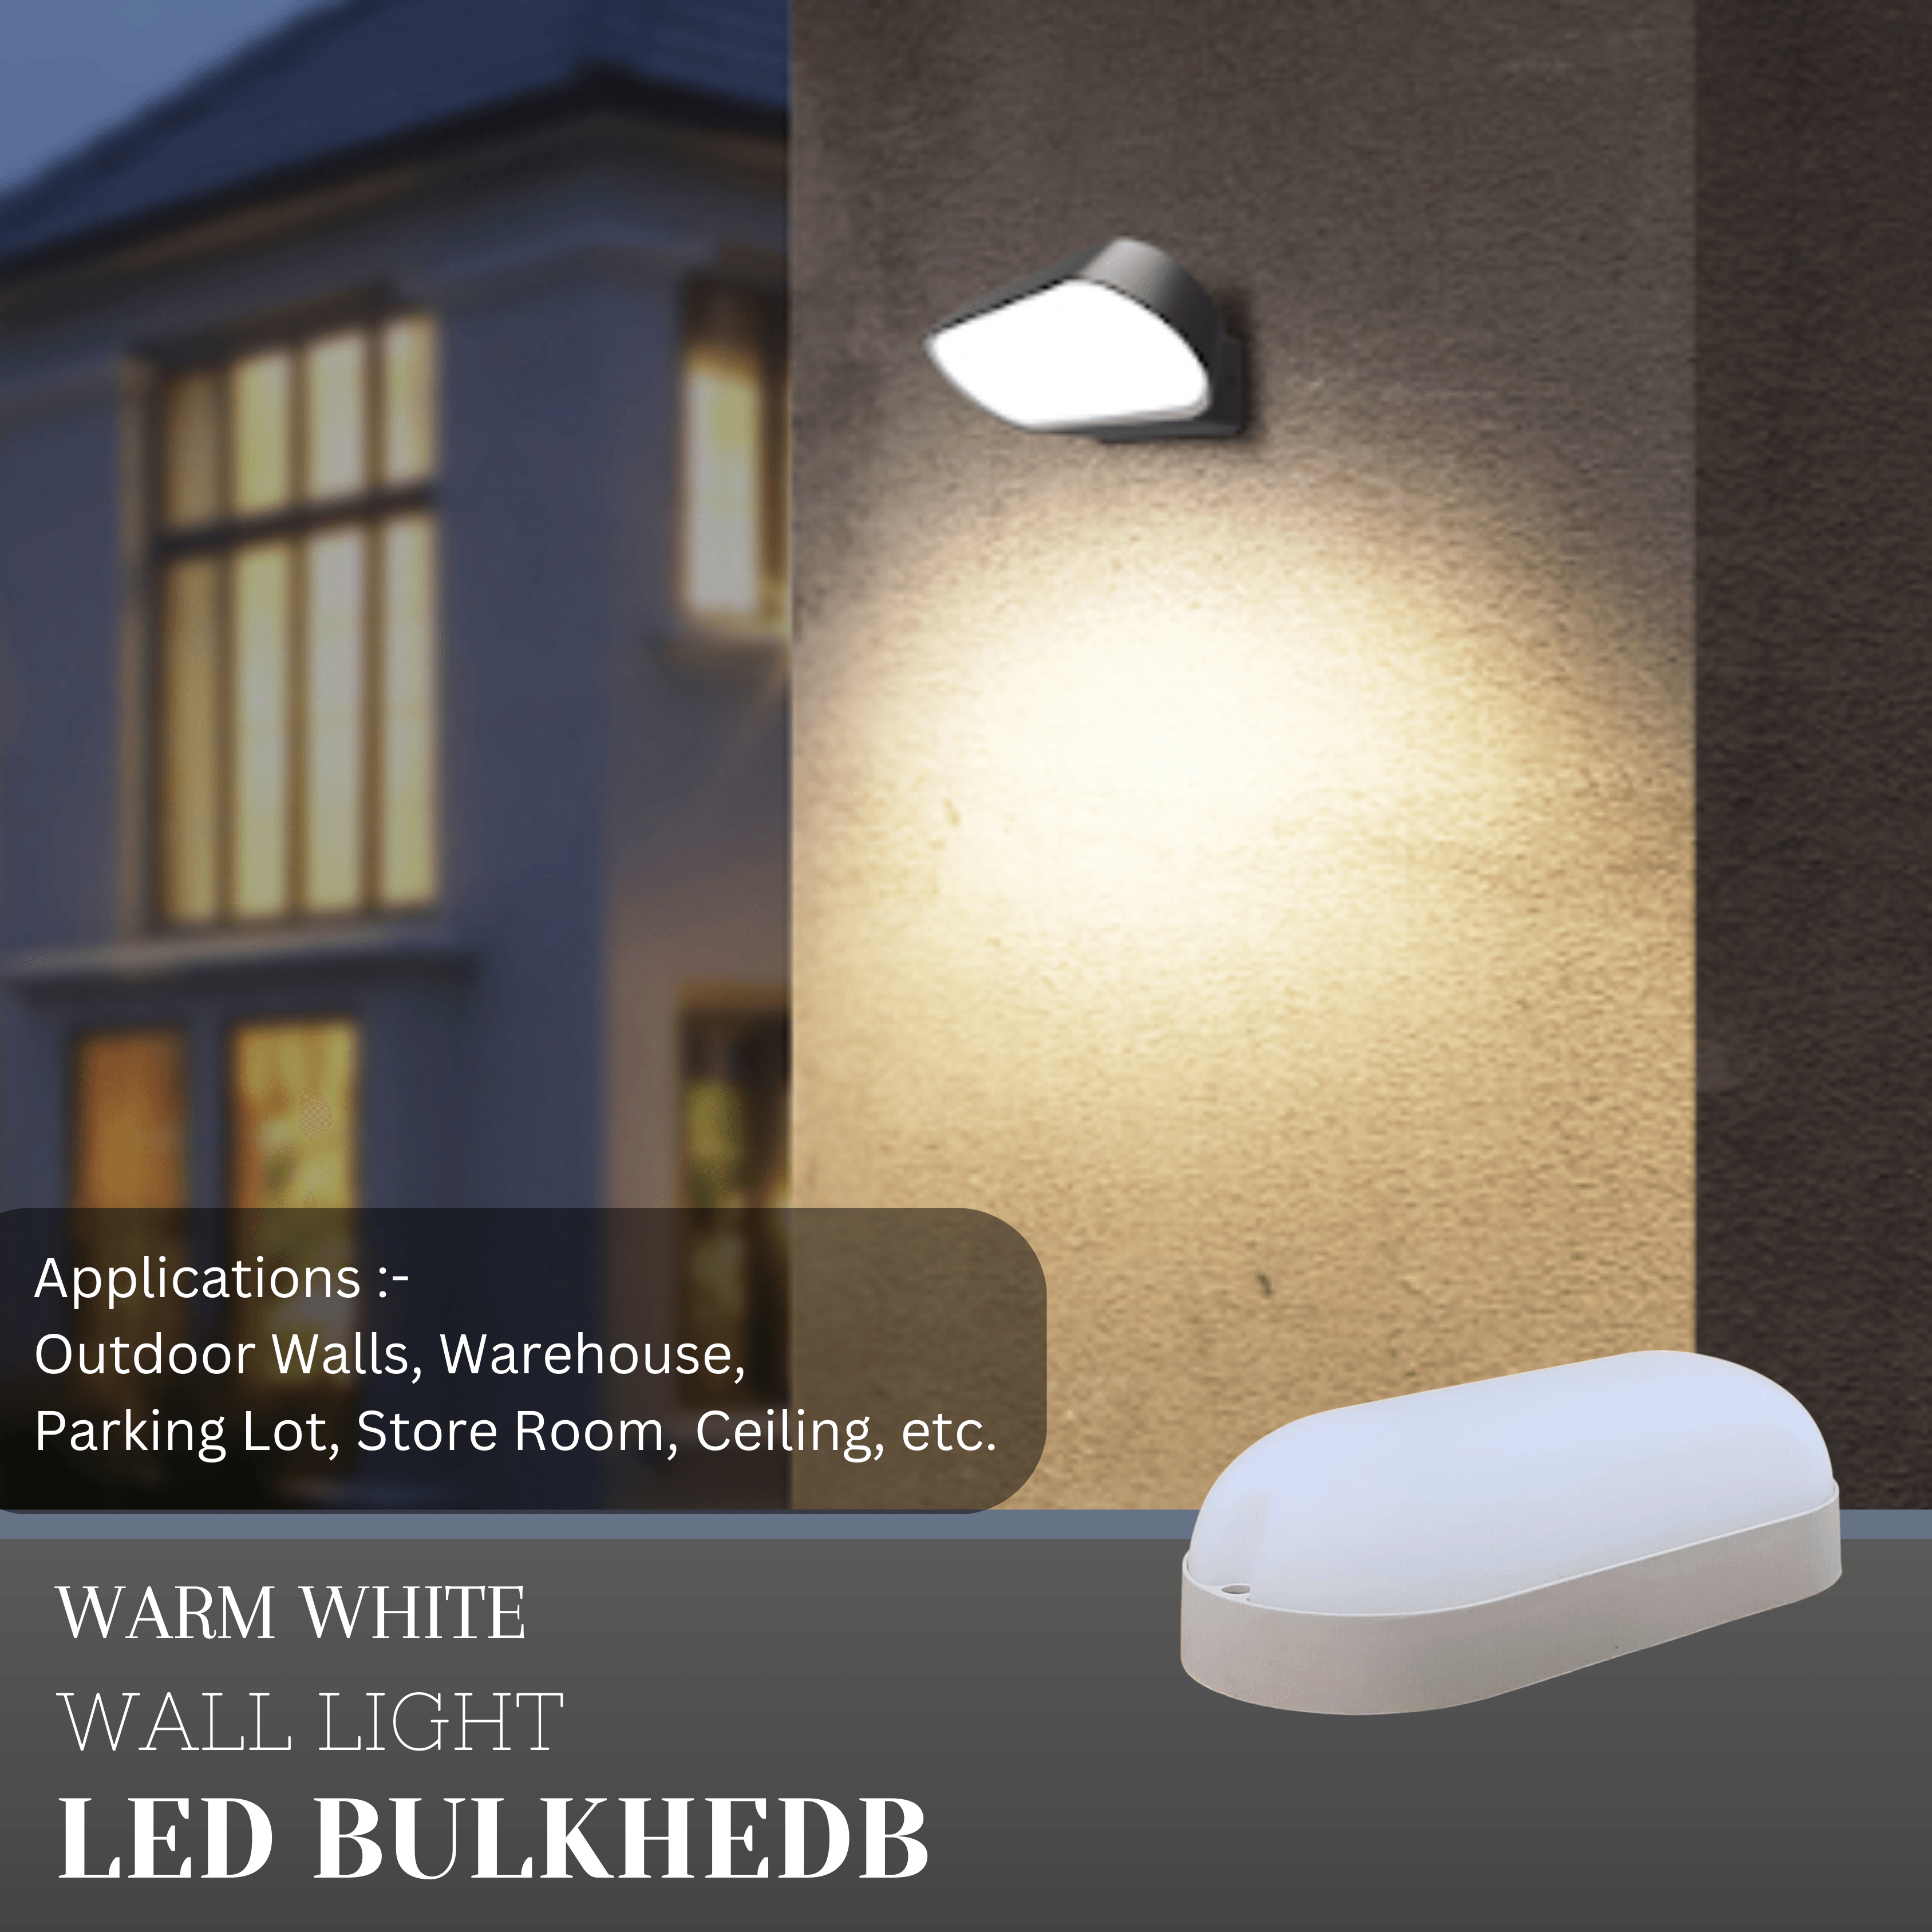 18 Watt LED Oval Shape Outdoor Bulkhead Waterproof Light for Outdoor Purposes